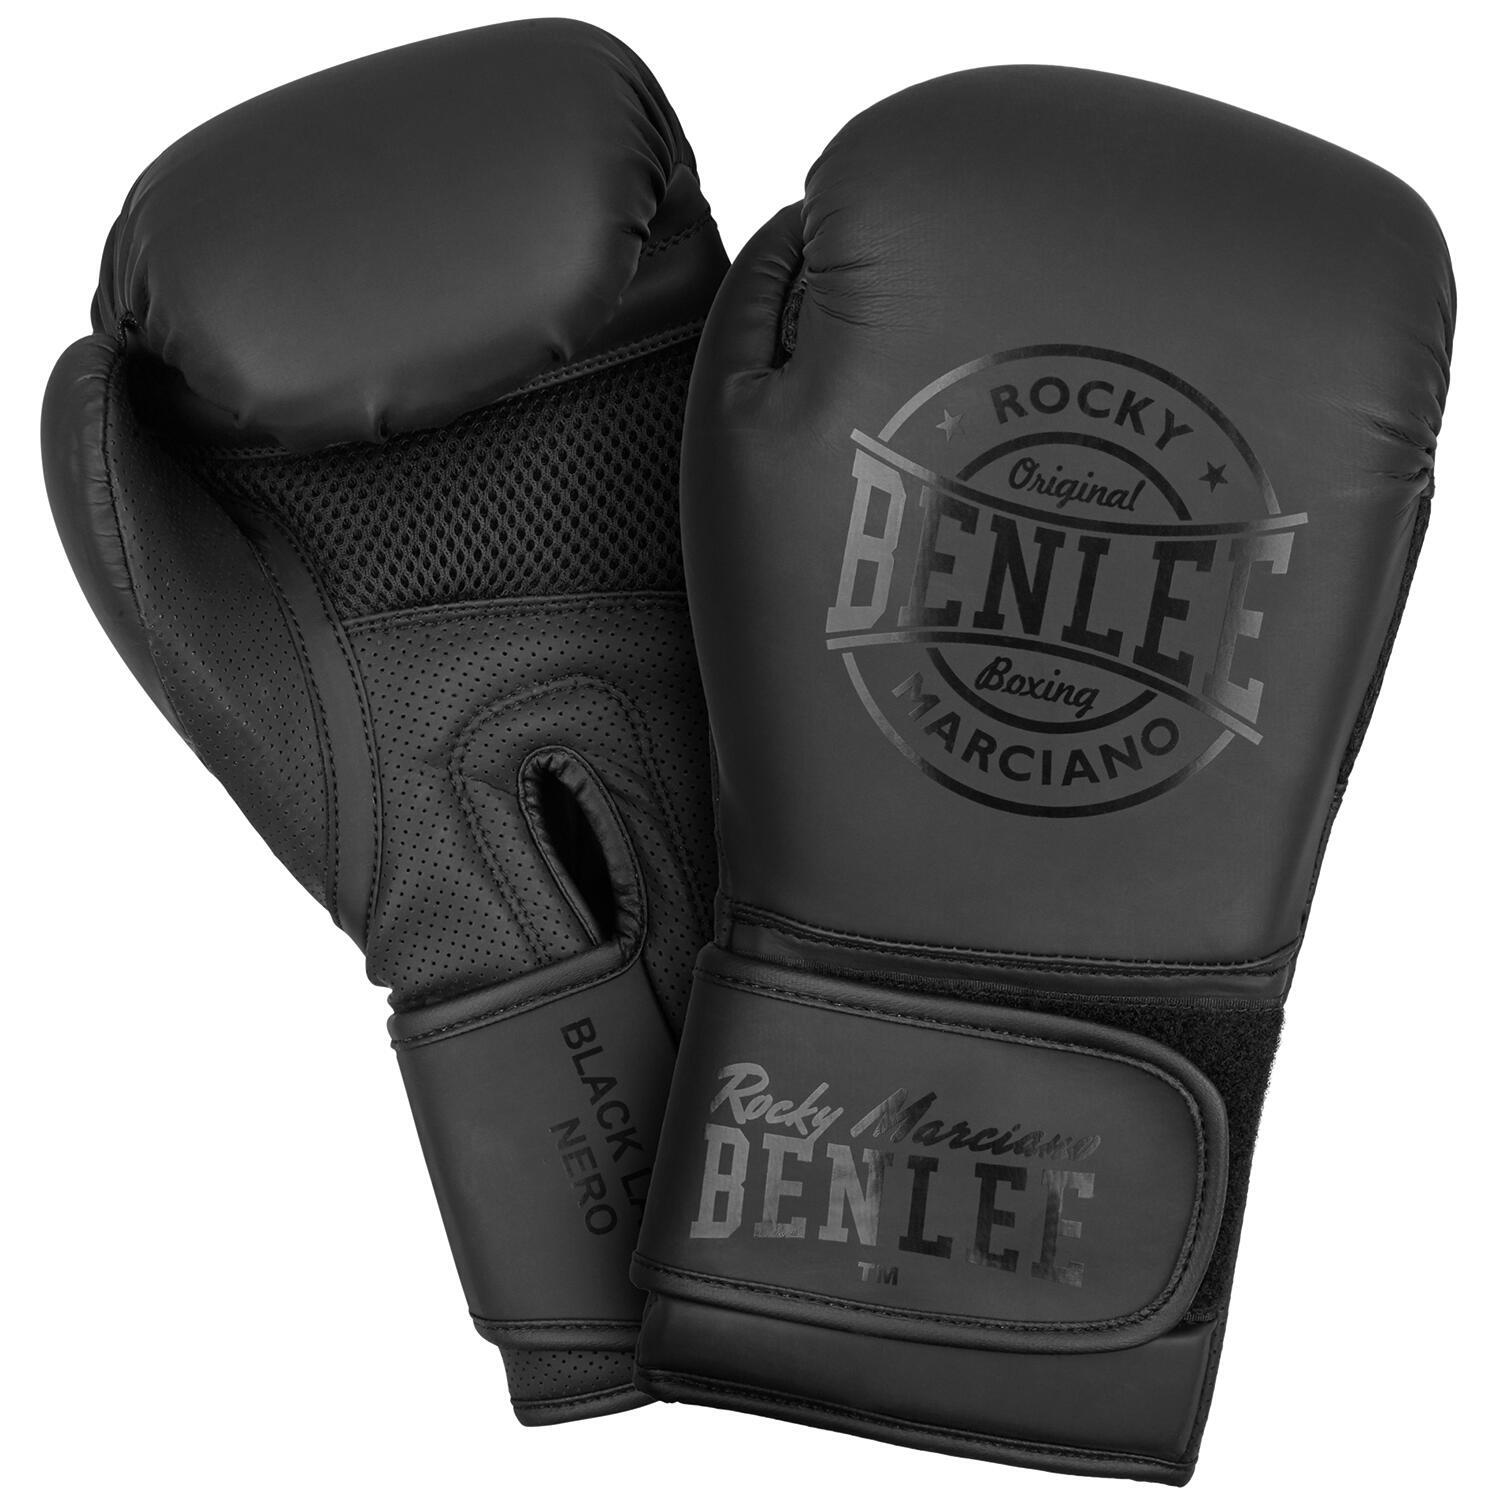 Боксерские перчатки BenLee Black Label Nero 12 унций, черный боксерские перчатки infinite force dark ice 10 унций